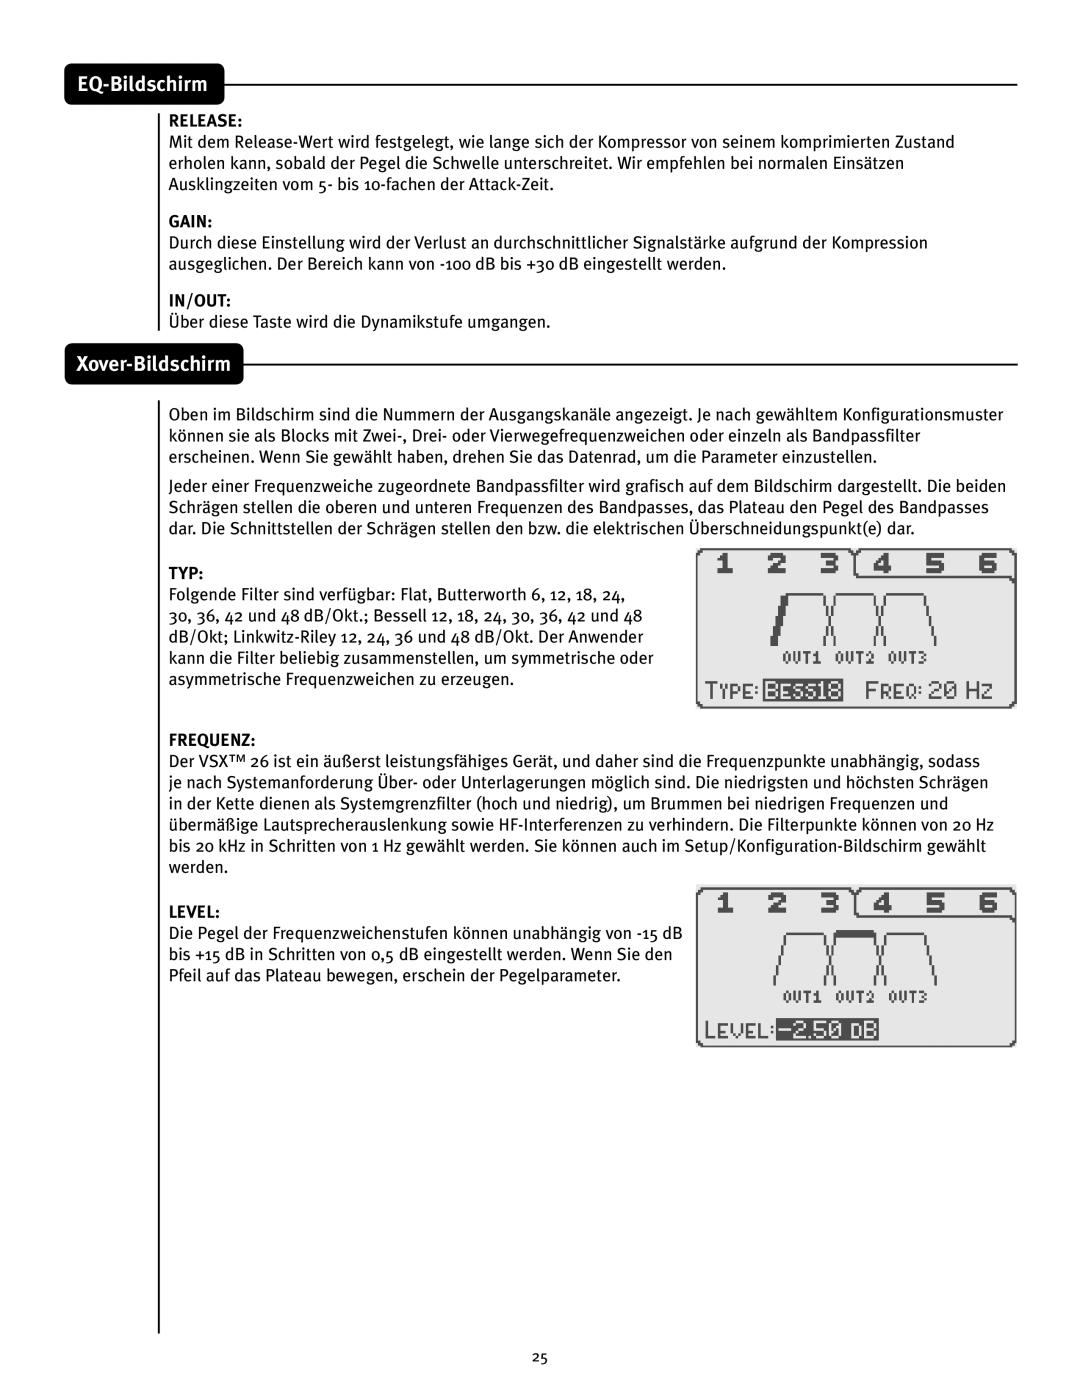 Peavey VSX 26 manual Xover-Bildschirm, EQ-Bildschirm, Release, Gain, In/Out, FrequenZ, Level 